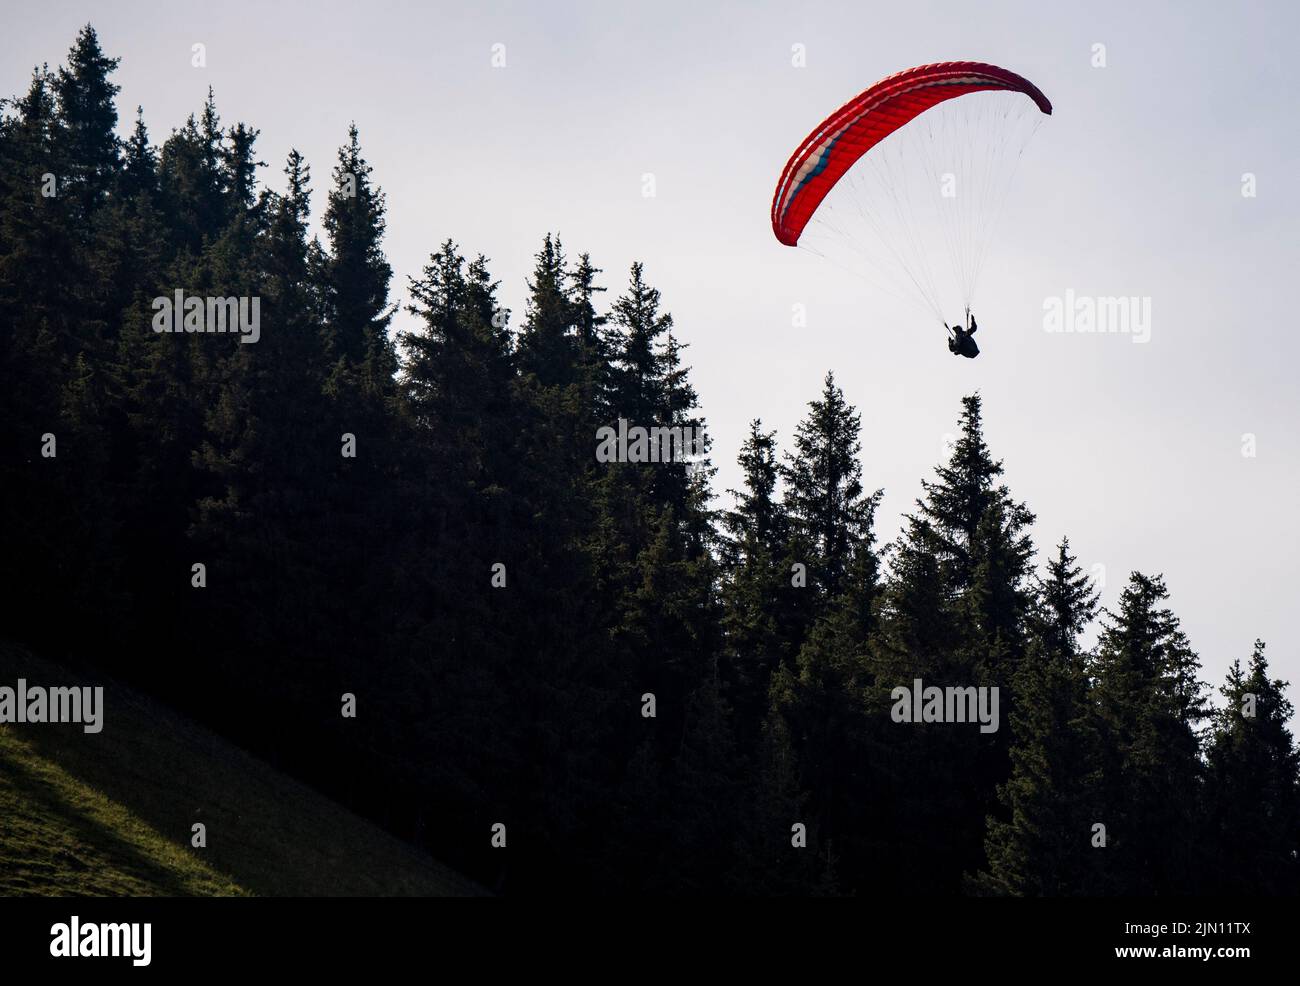 (220808) -- XINJIANG, 8. August 2022 (Xinhua) -- Chen Ruifeng gleitet am Himmel im Bezirk Jimsar, nordwestlich der Autonomen Region Xinjiang Uygur in China, 21. Mai 2022. Der 52-jährige Chen Ruifeng, der in Xinjiang geboren wurde, ist ein Paragliding-Amateur. Er sagt, dass er sich wie mit seinen eigenen Flügeln fühlt, wenn der Gleitschirm geöffnet wird. Im Jahr 2016 begann Chen Ruifeng, Gleitschirmfliegen zu üben. Später trat er einem lokalen Verein bei und erhielt nach dem Training seine Flugbescheinigung. Als Outdoor-Enthusiast engagiert er sich auch für Trailrunning, Bergsteigen und Eisklettern. Seiner Meinung nach, das einzigartige Gelände von Xinjiang, wie m Stockfoto